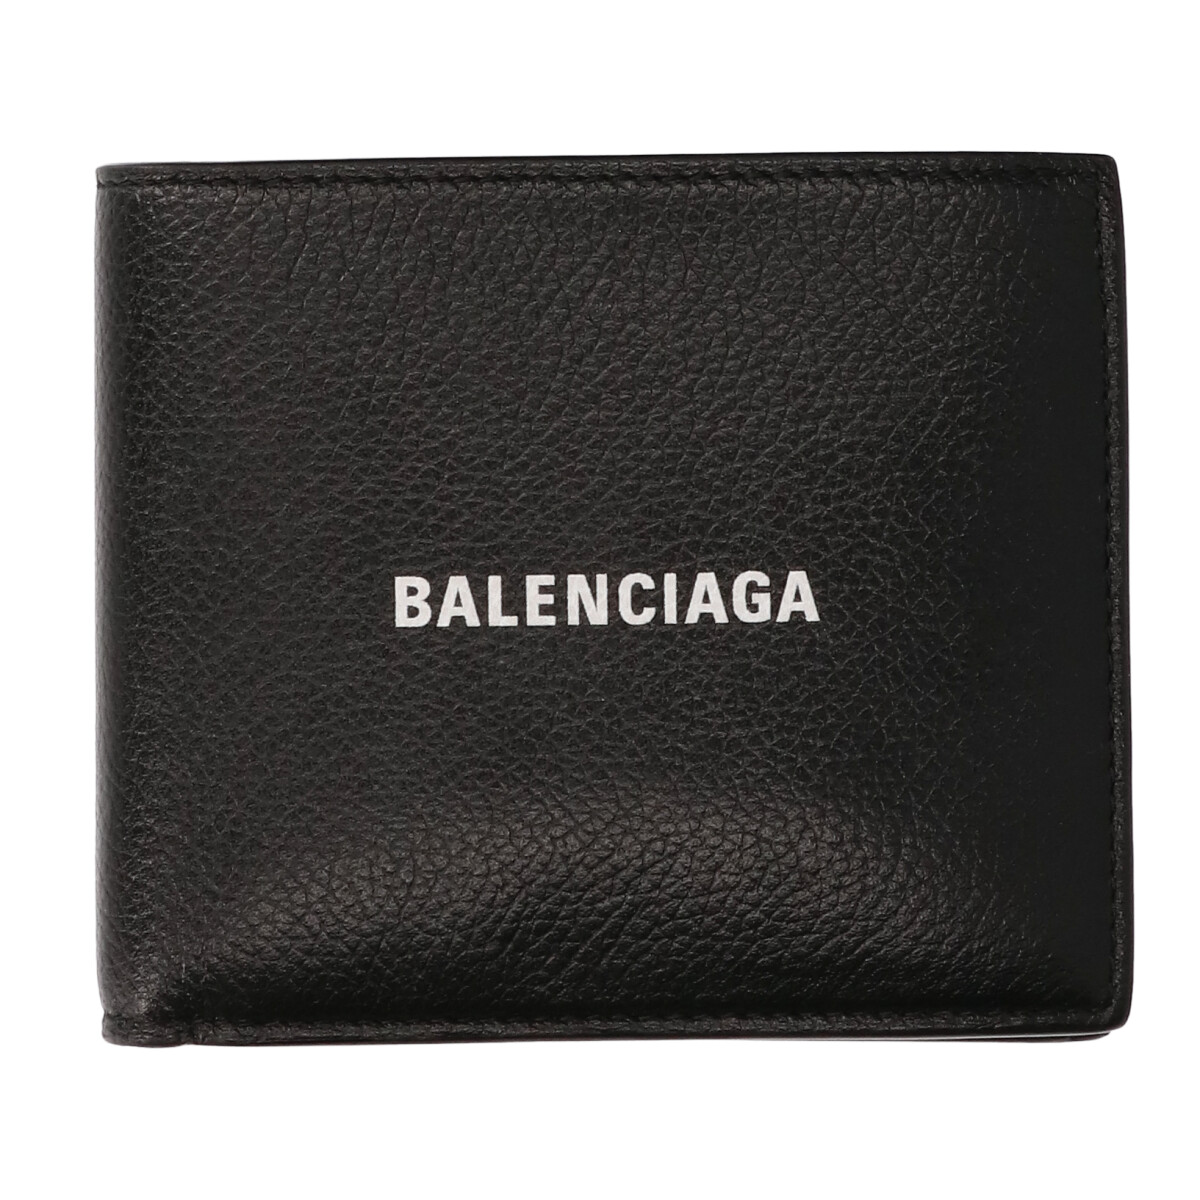 バレンシアガの594315 1IZI3 1090 CASH SO FOLD CO WAL GRAINED CALF ロゴ入り レザー二つ折り財布の買取実績です。